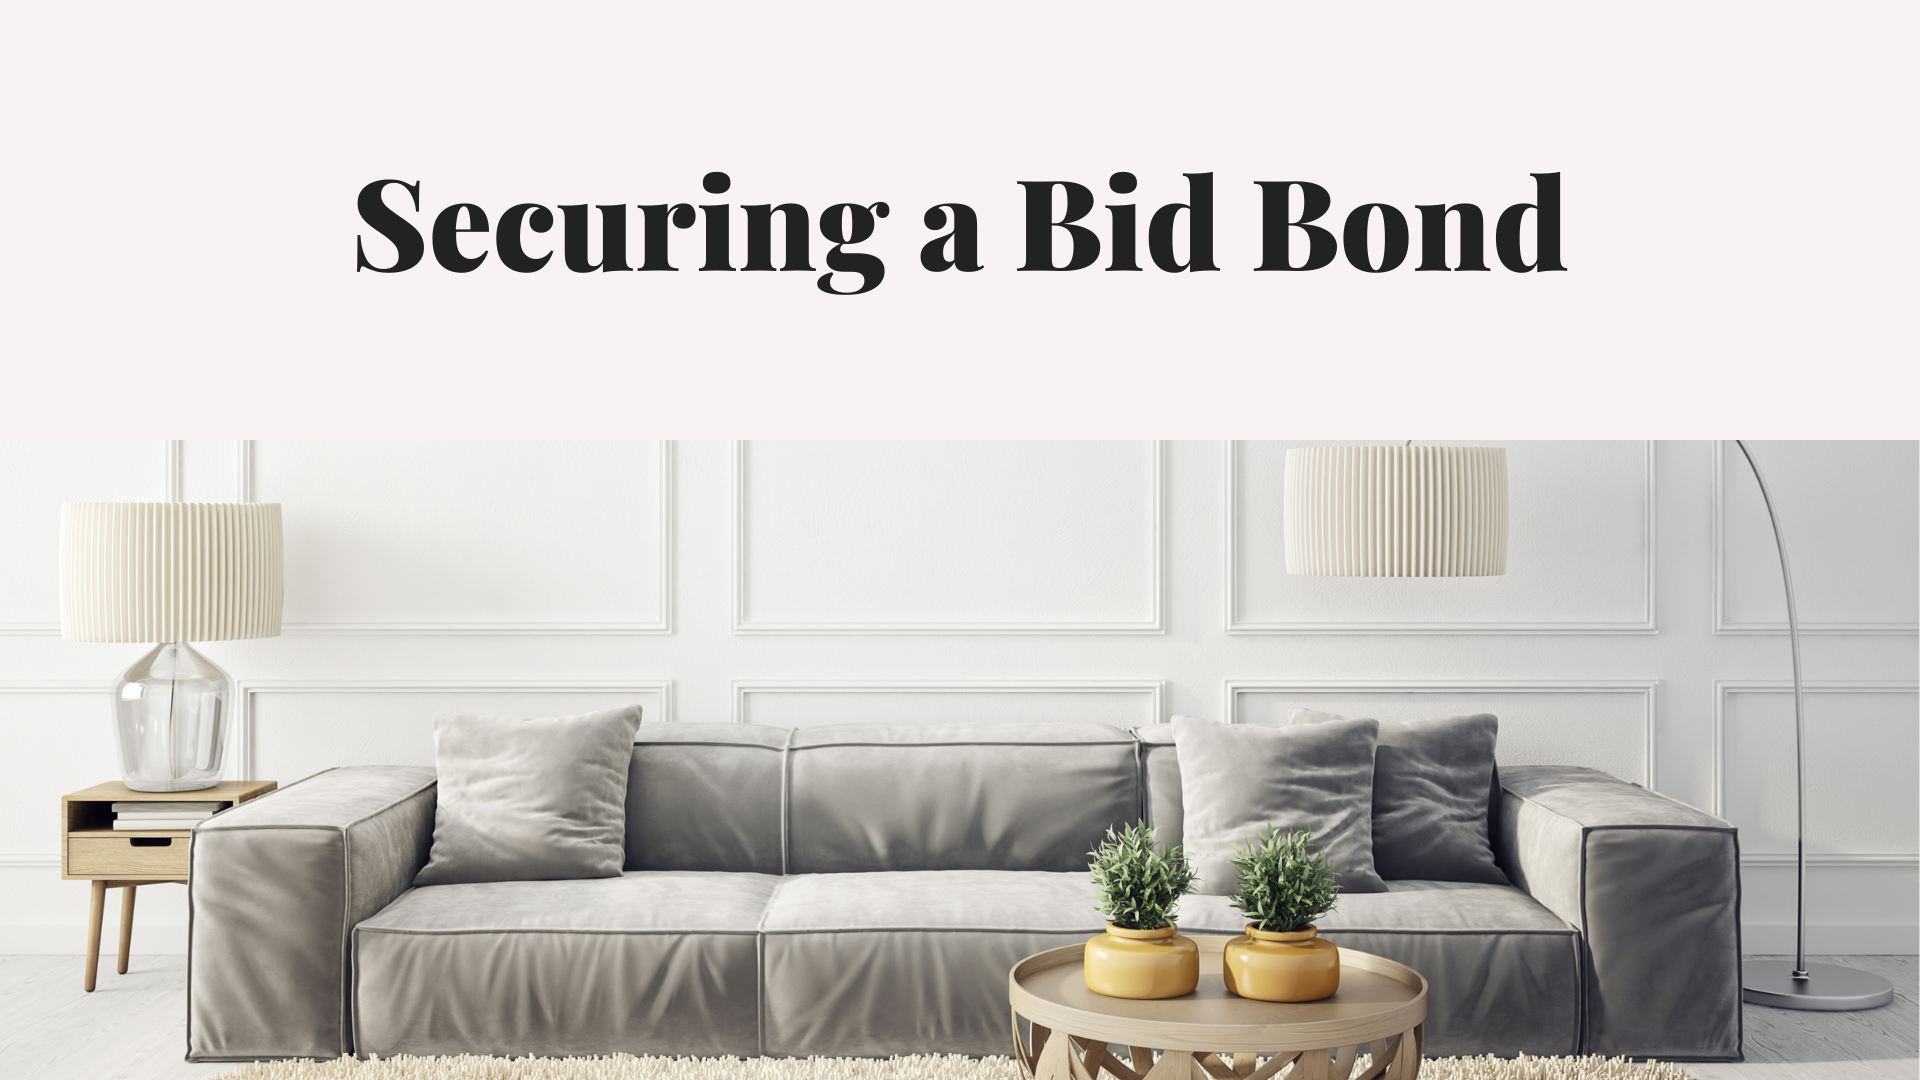 bid bond - How can I get a bid bond - home interior